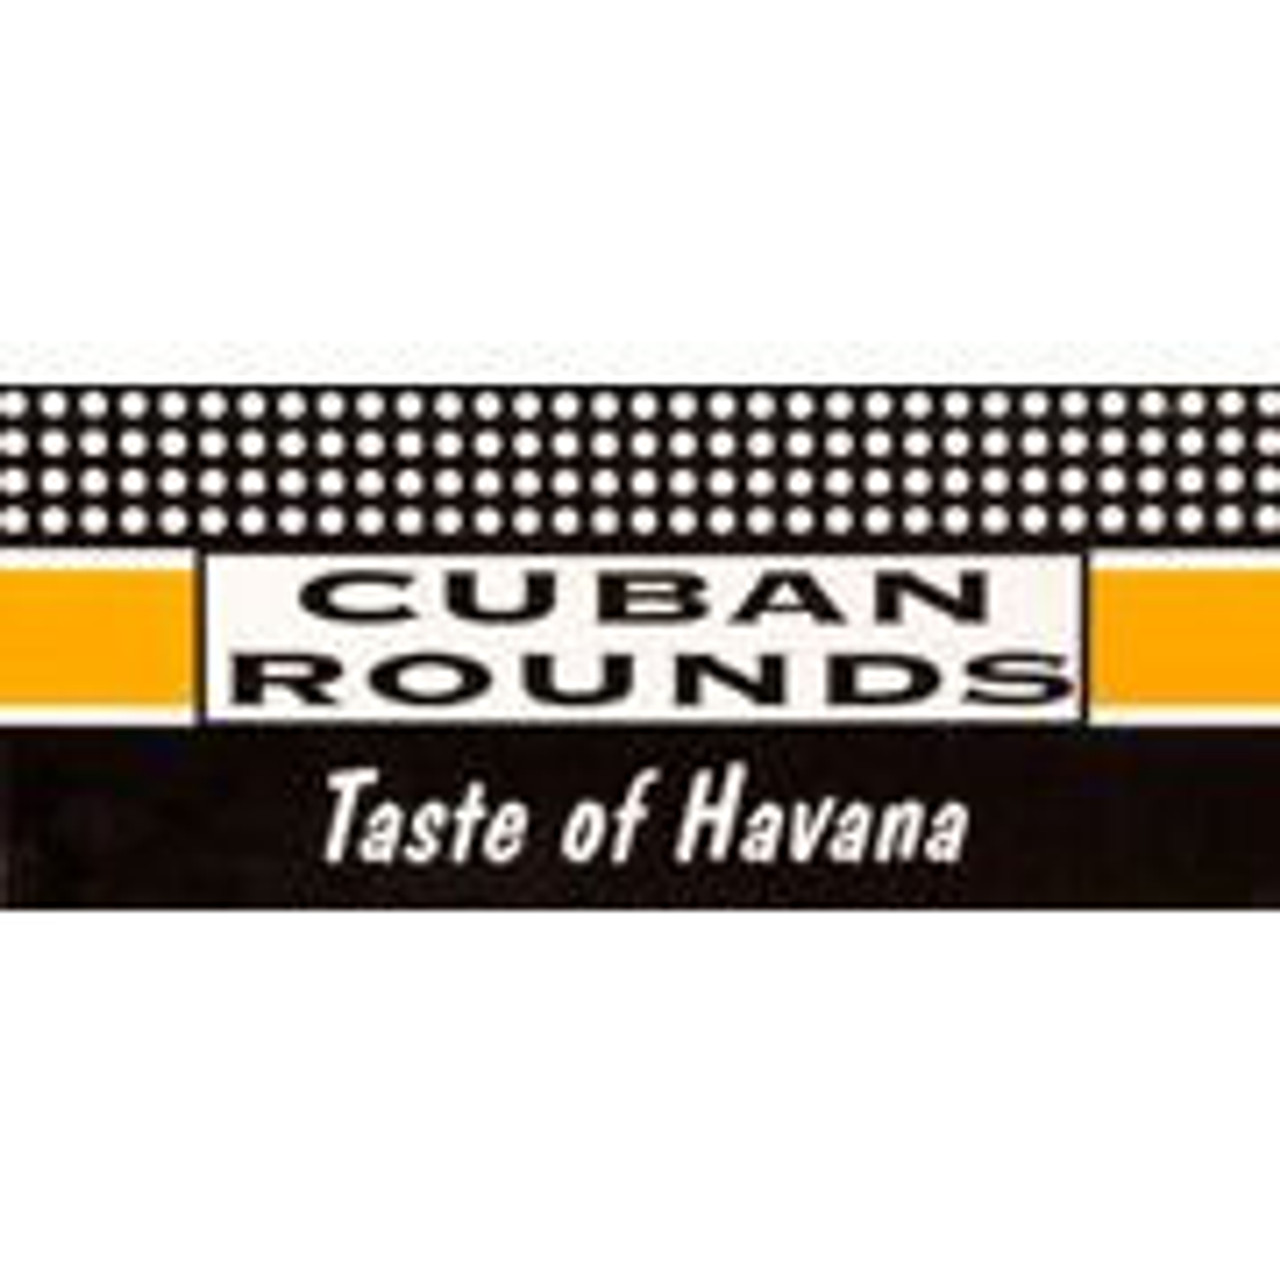 Cuban Rounds Logo